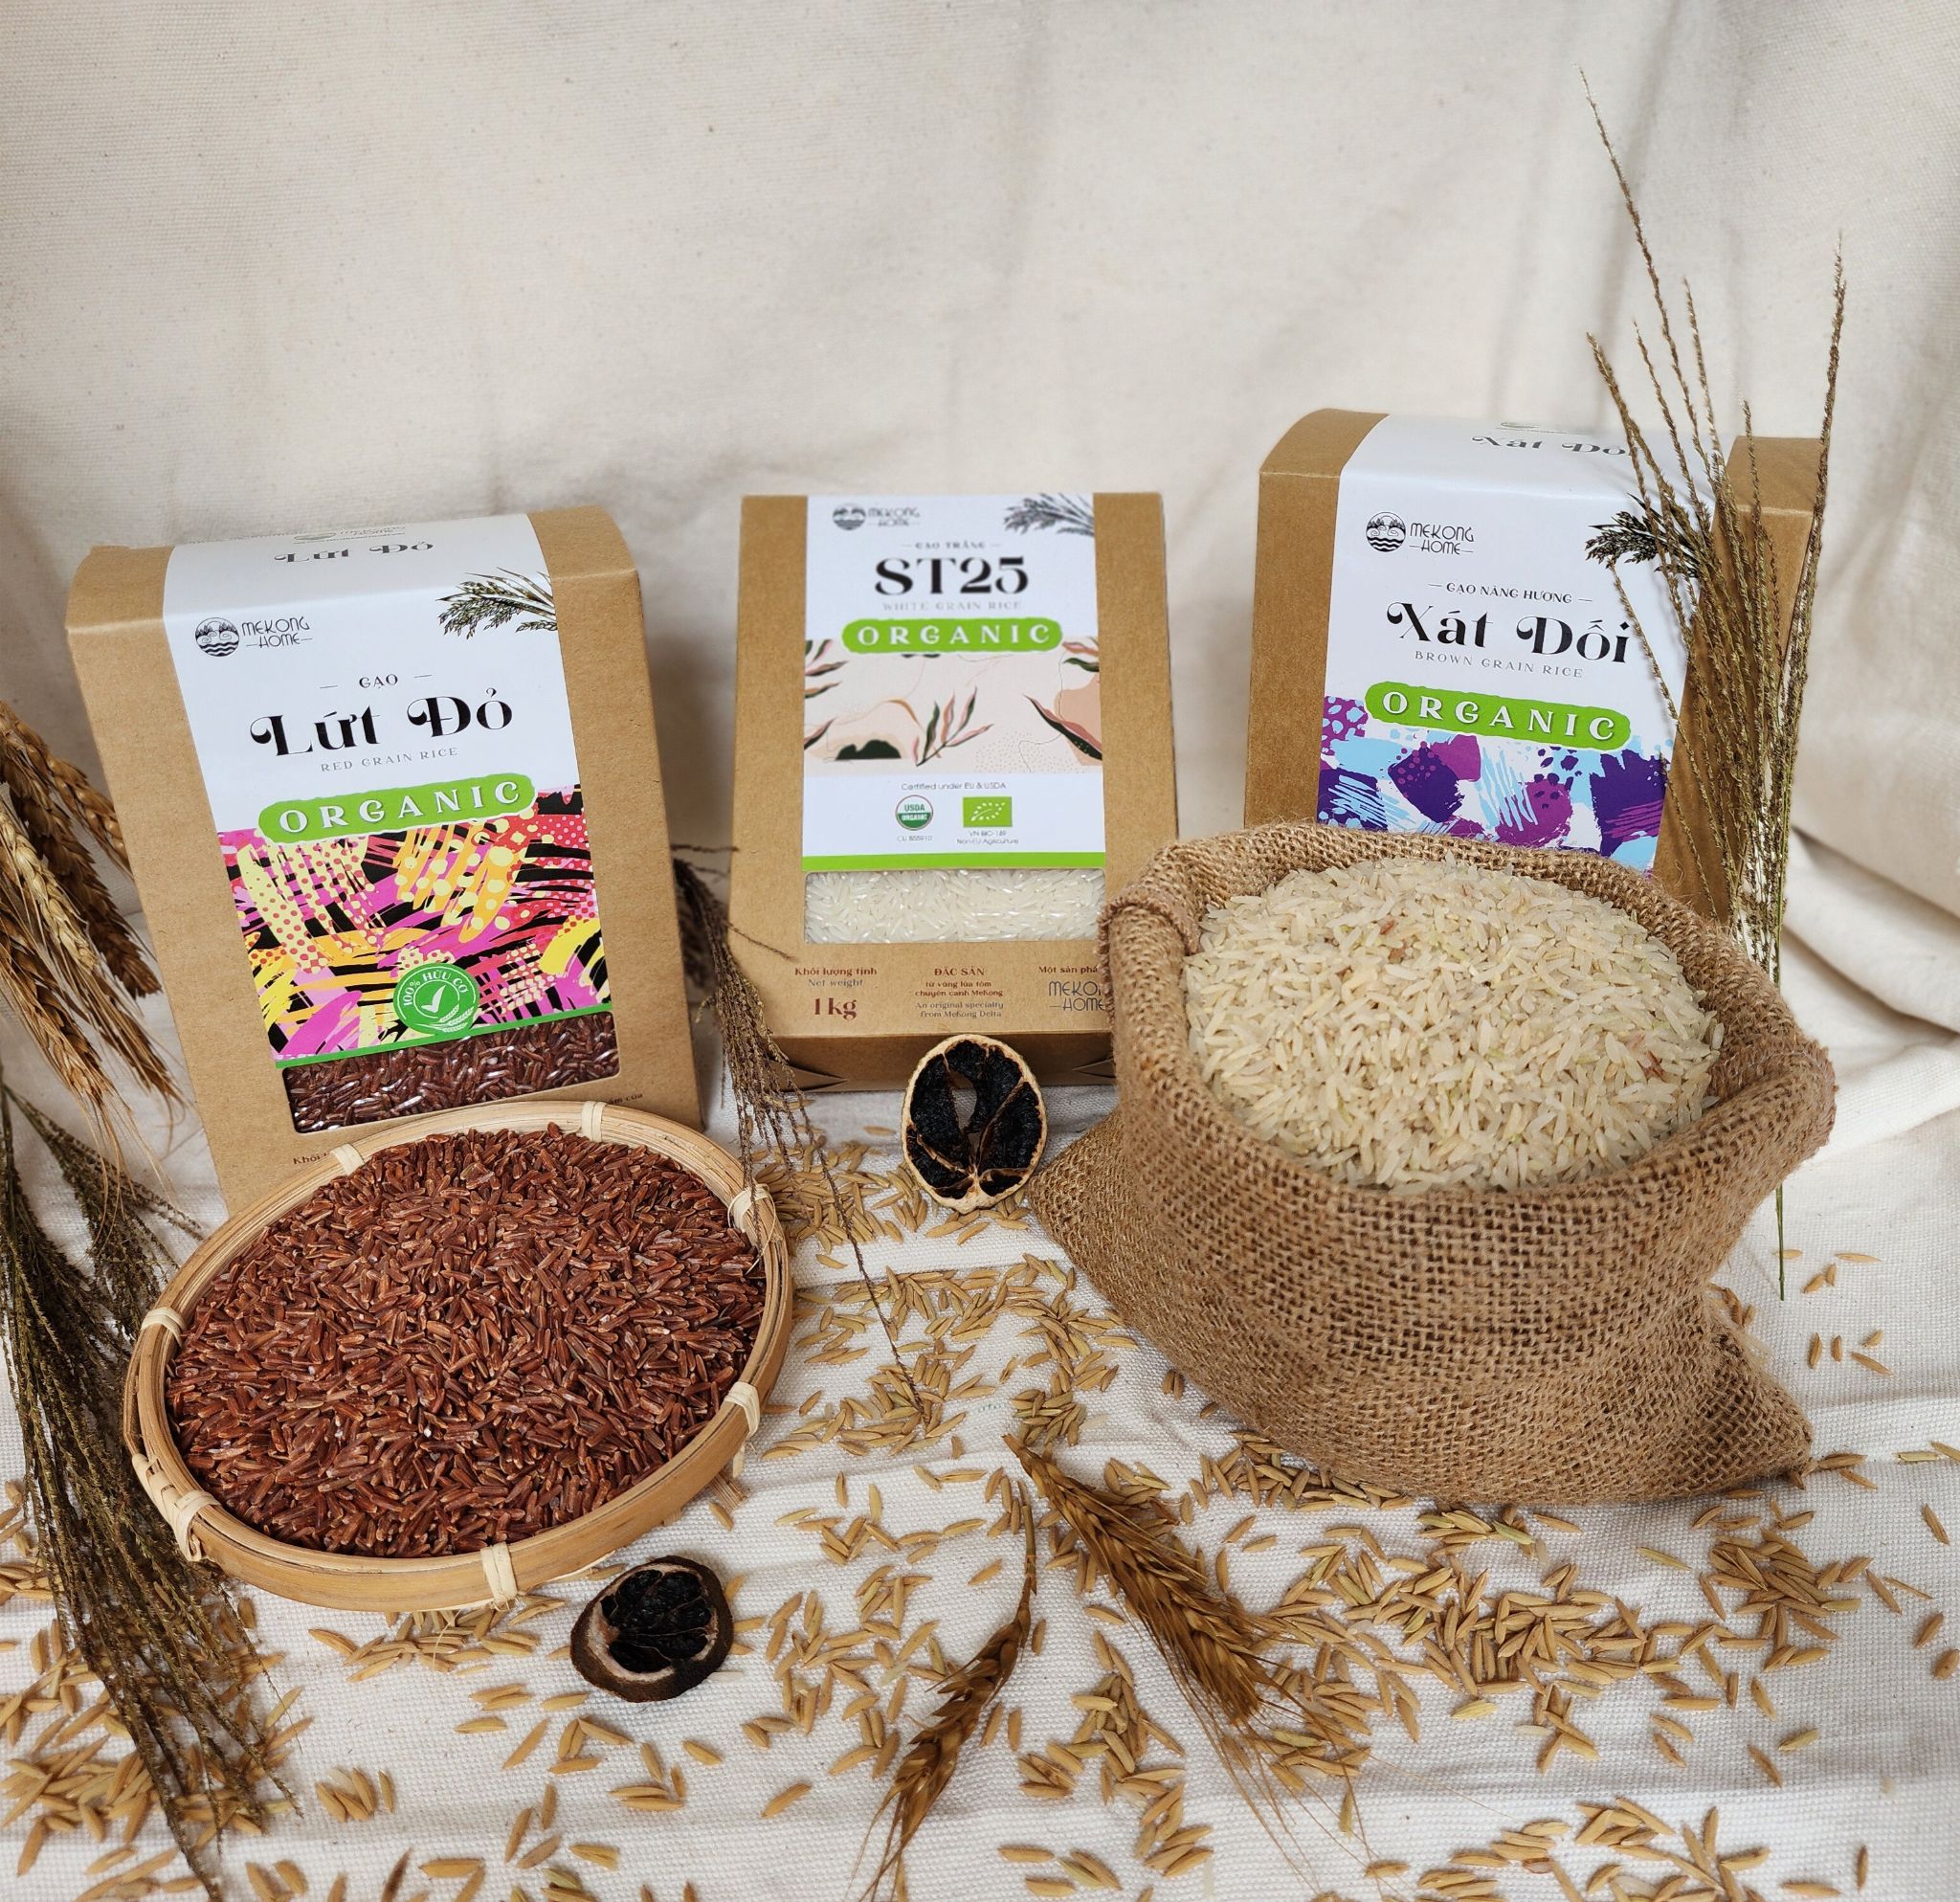 Gạo ST25 100% Organic, gạo chuẩn vị, dẻo, thơm tự nhiên, mùi ngọt nhẹ - 4kg